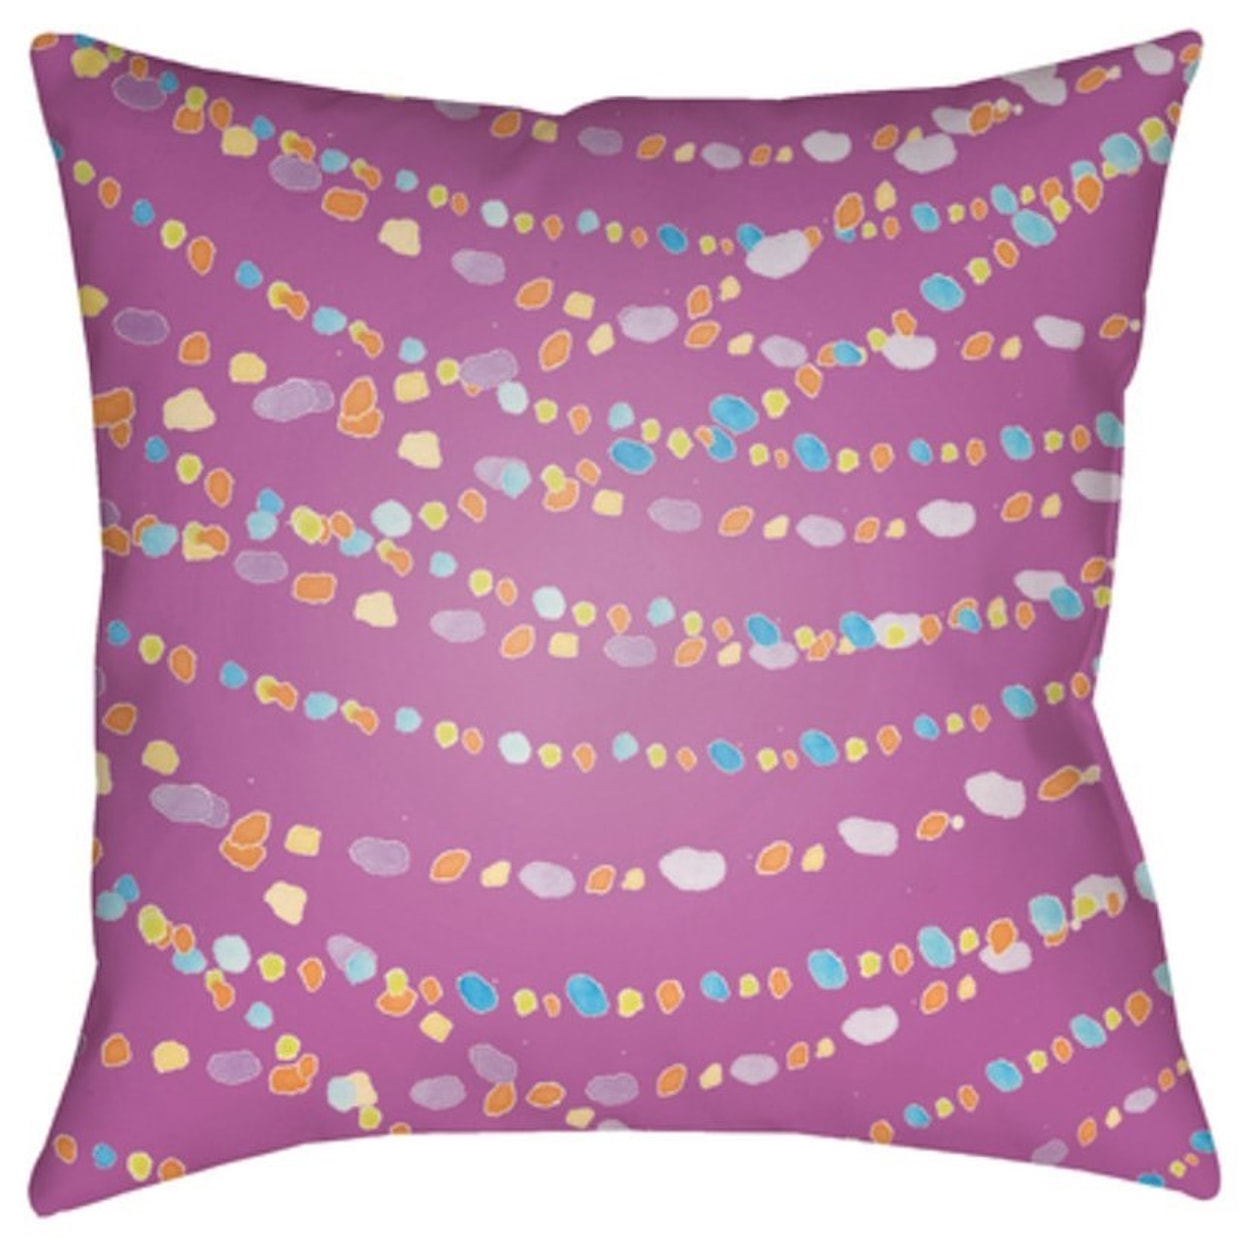 Surya Beads Pillow